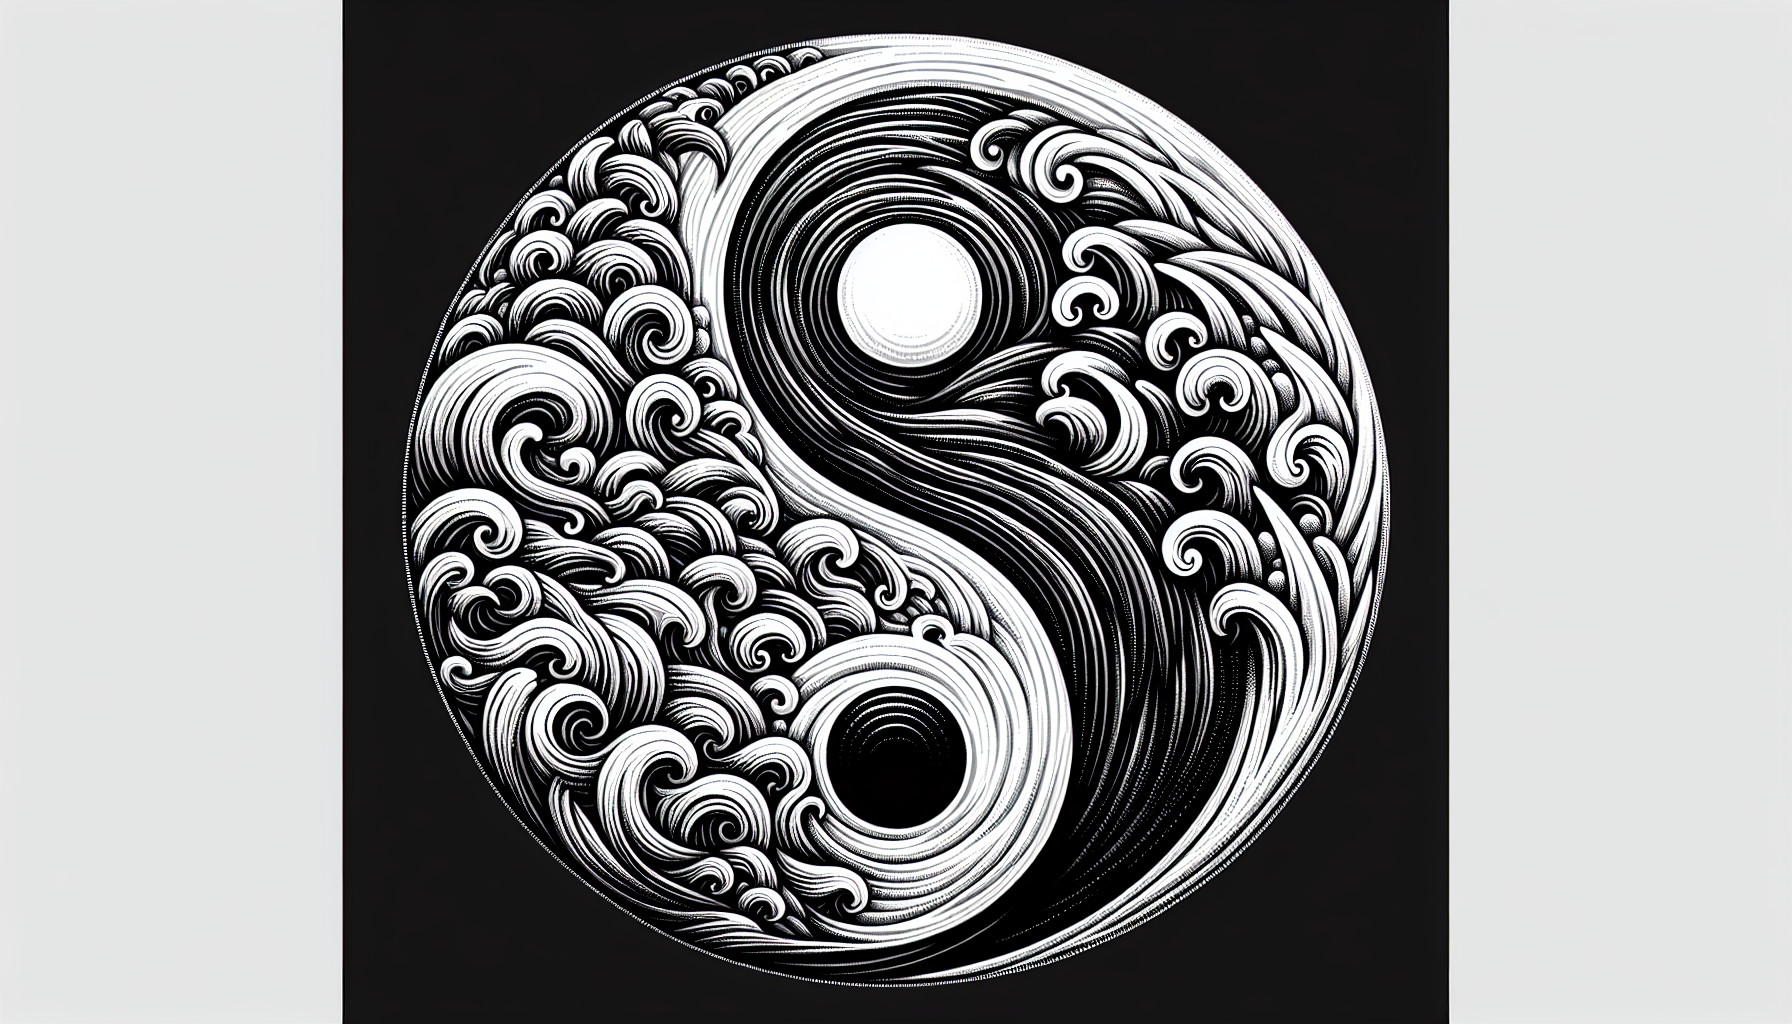 Análisis Del Símbolo Del Yin Y Yang: Equilibrio Y Dualidad